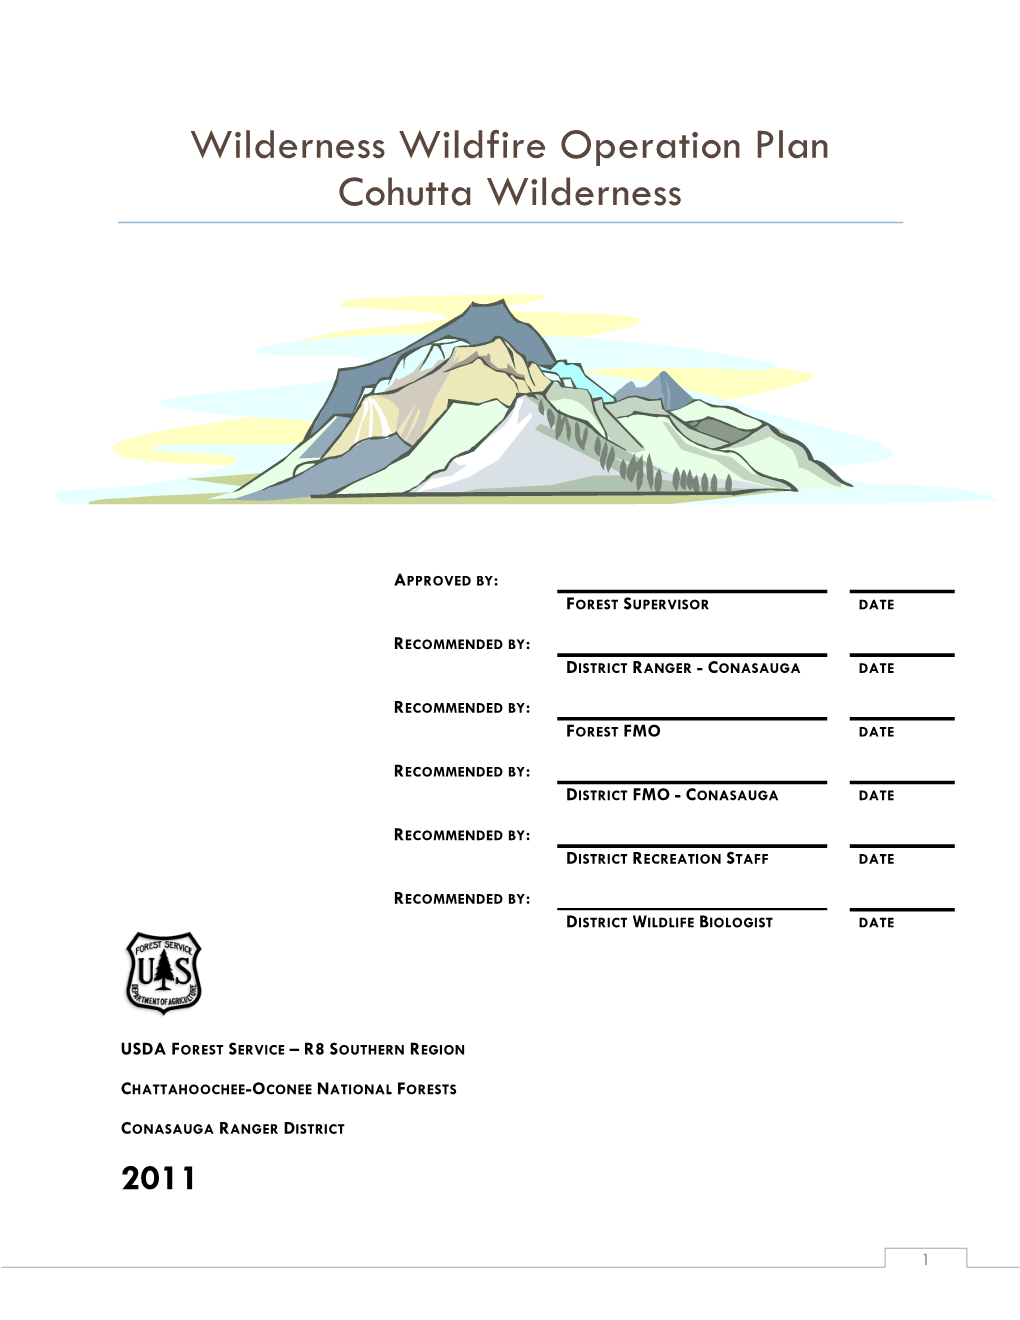 Cohutta Wilderness Wilderness Wildfire Operation Plan